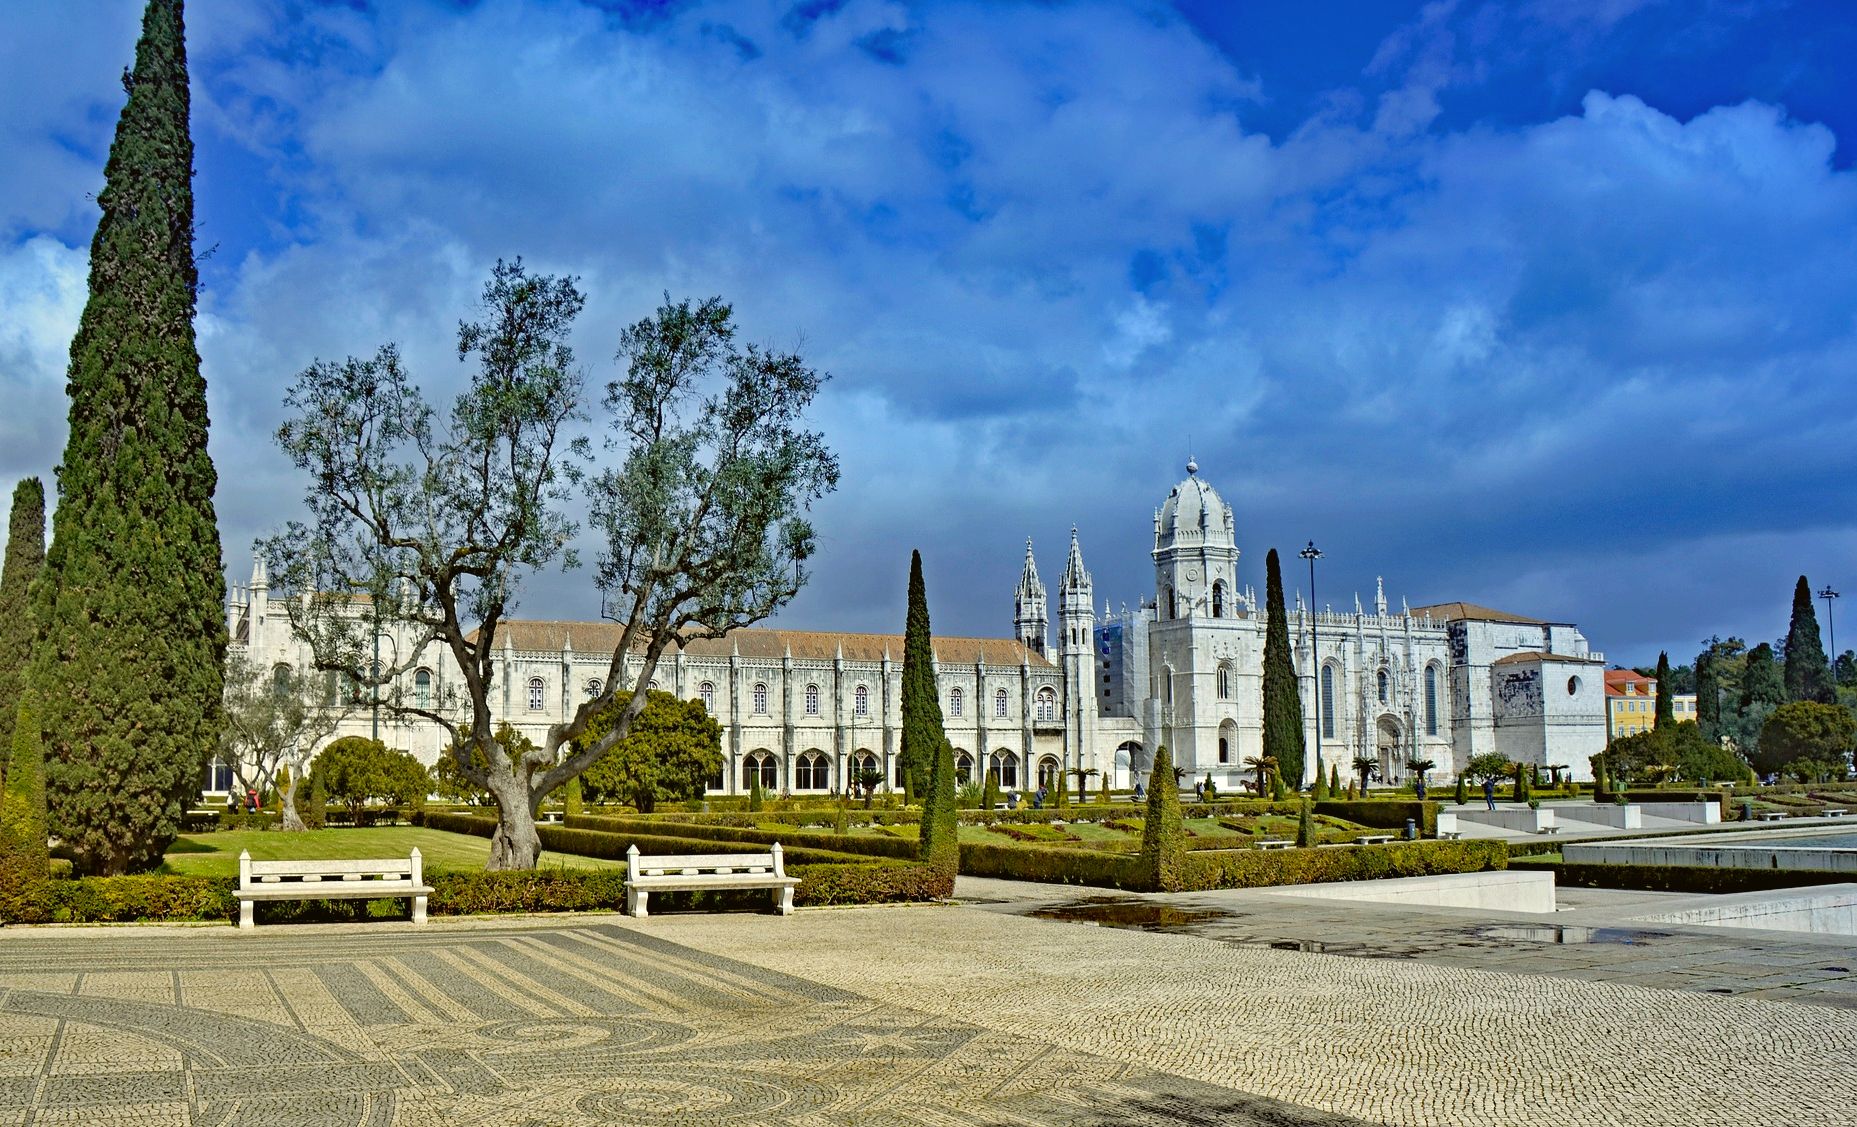  Mosteiro dos Jerônimos - principais pontos turísticos de Lisboa